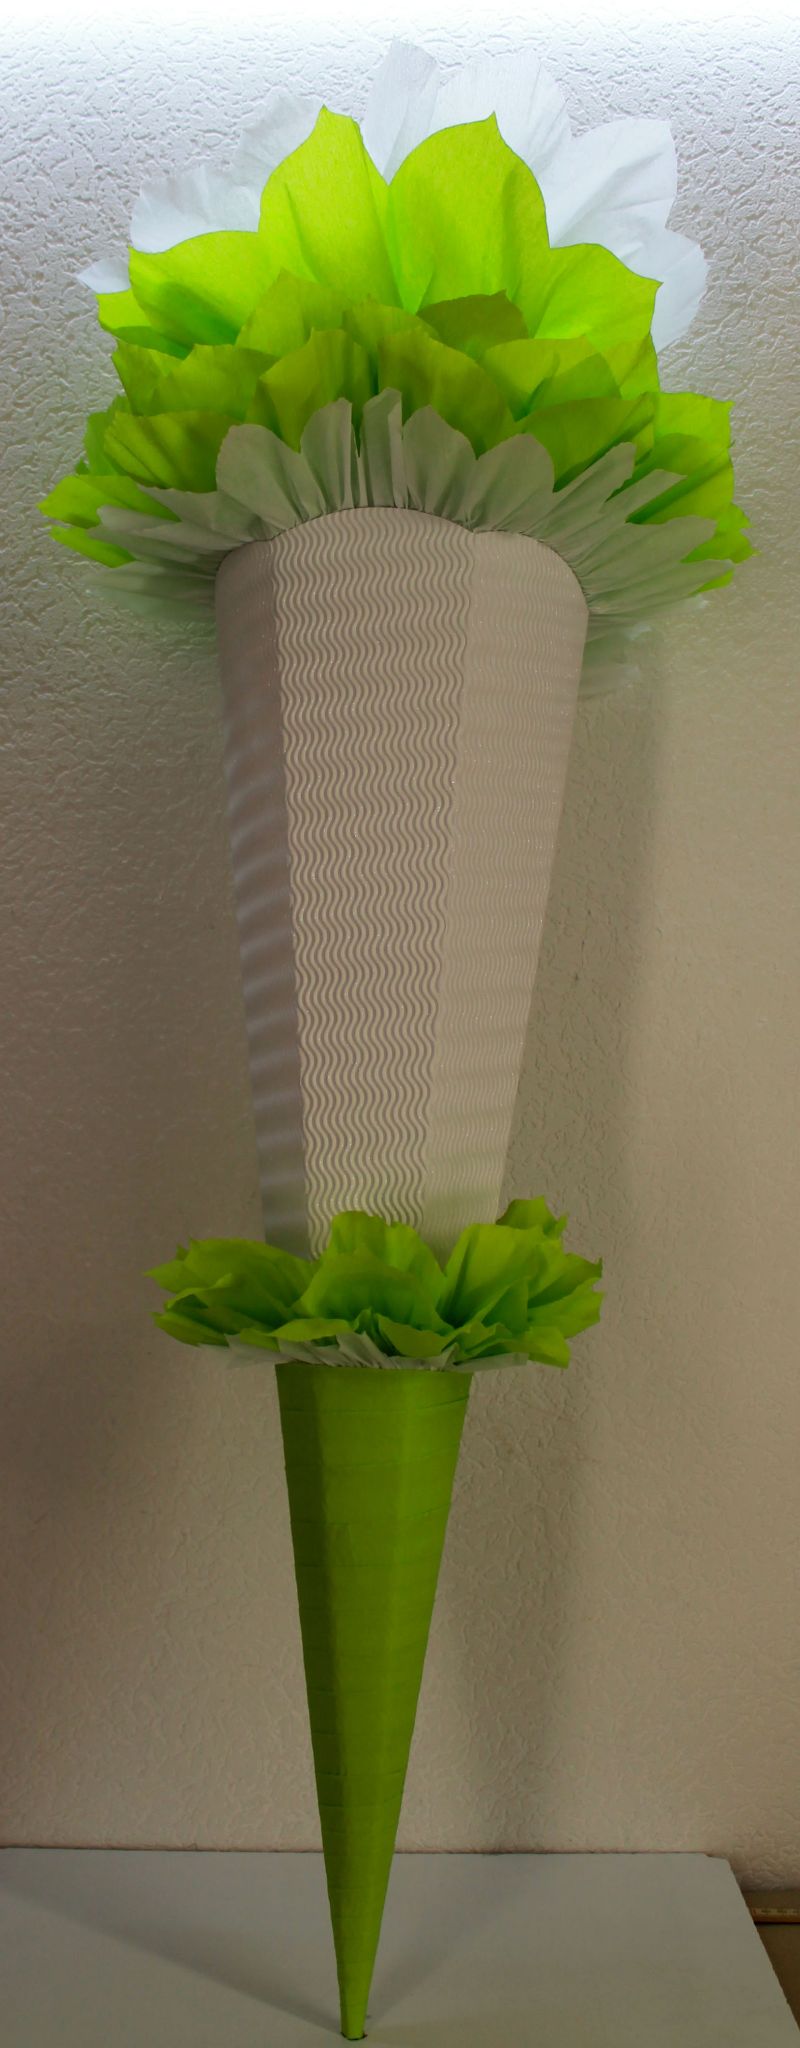  - Schultüte Zuckertüte Rohling zum selbst verzieren Rohling 70 75 80 85 90 100 cm / 1m für Mädchen HANDARBEIT hellgrün weiß